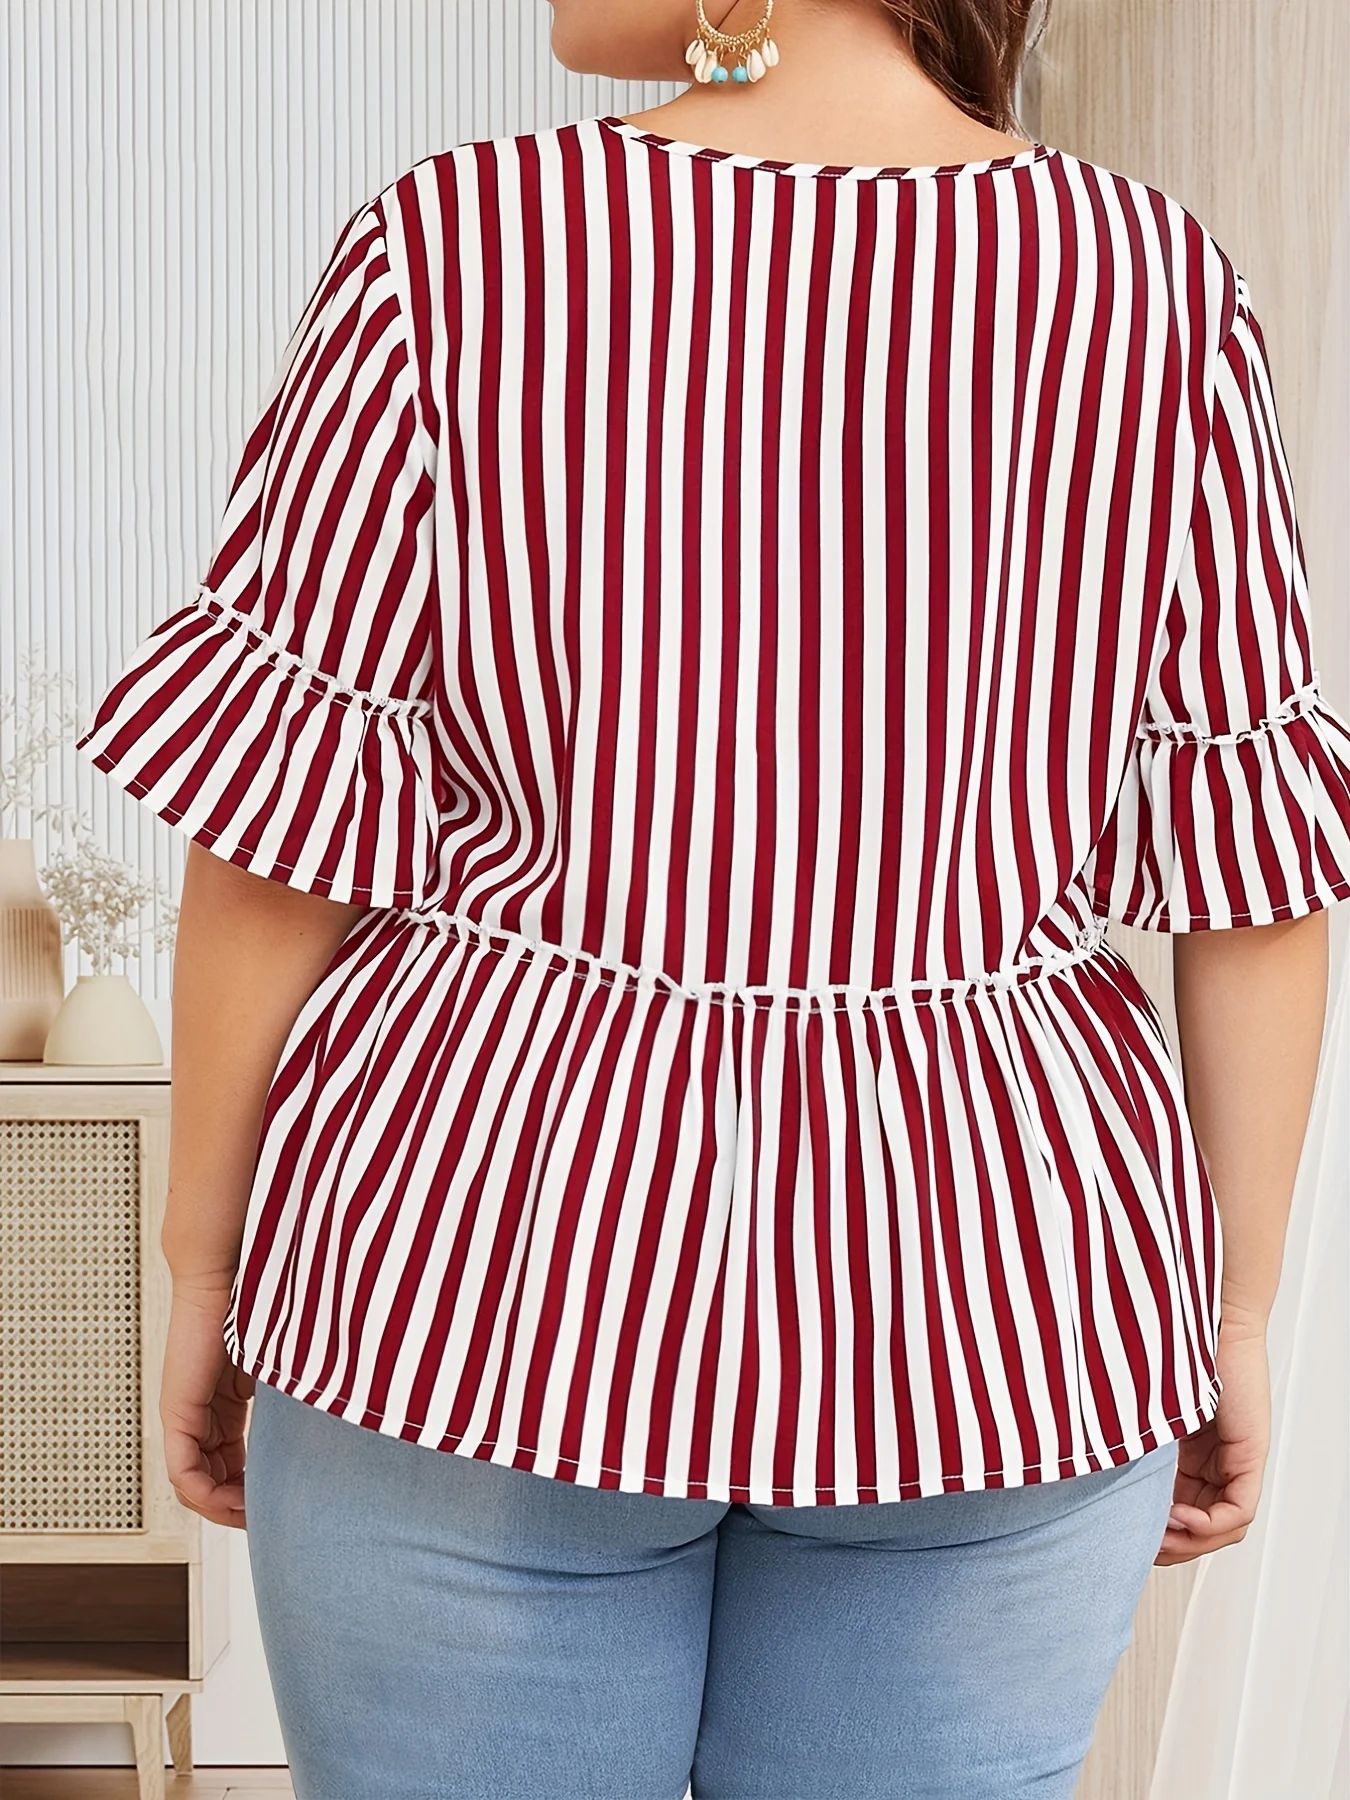 Finjani Повседневная блузка больших размеров, женская плюс полоска с принтом салата Отделка с коротким рукавом V-образным вырезом Слегка эластичный топ 1